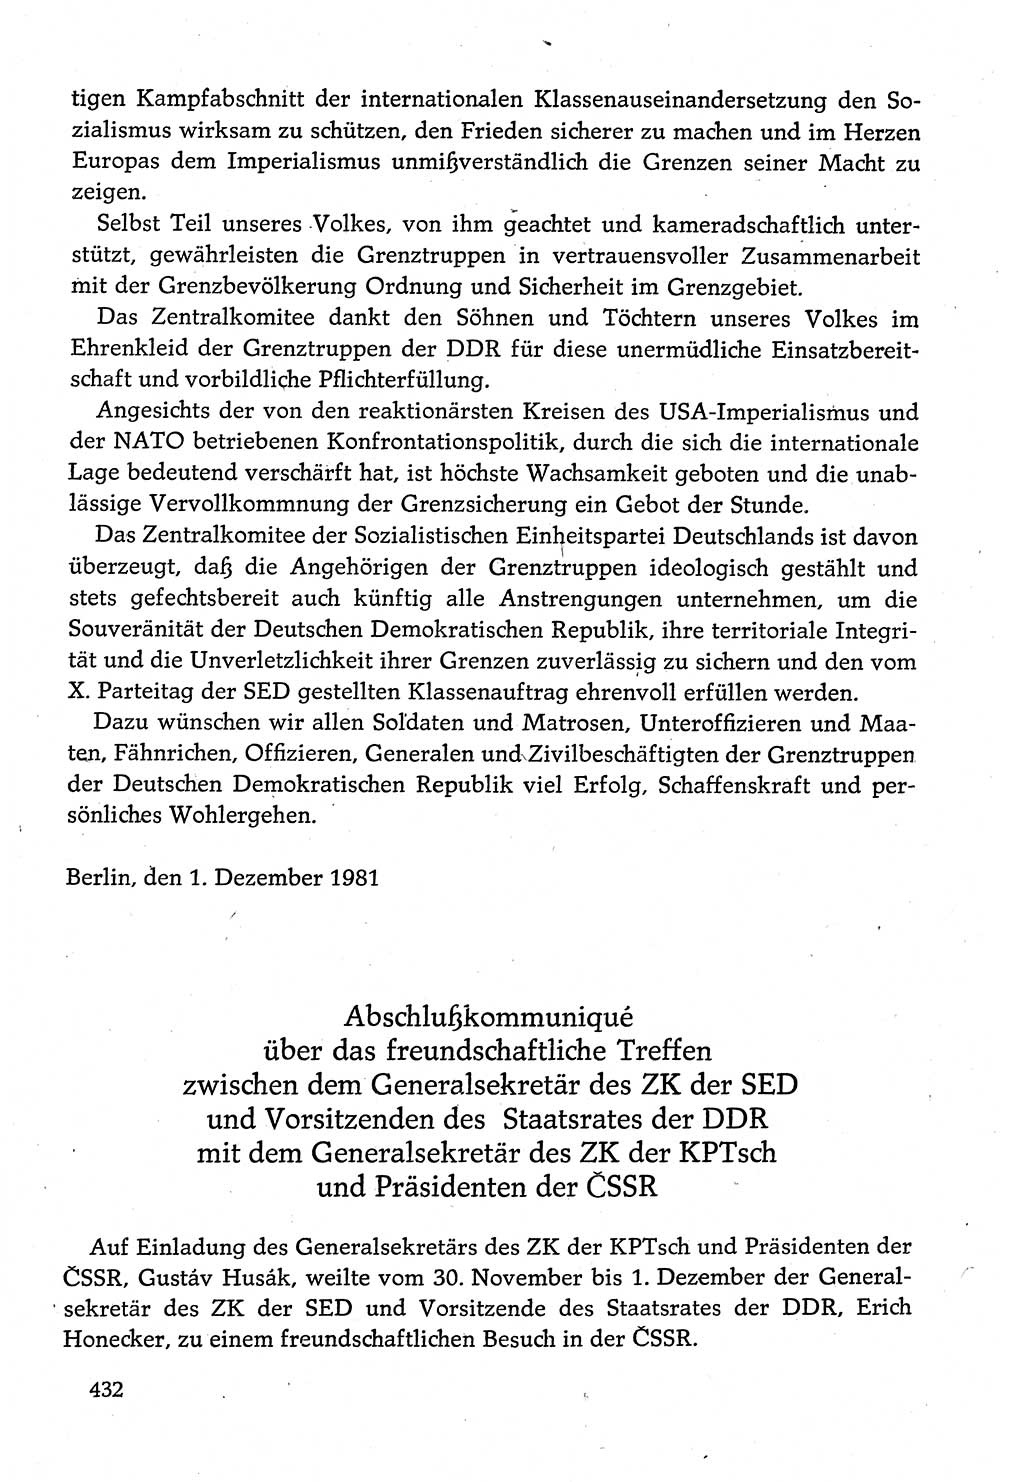 Dokumente der Sozialistischen Einheitspartei Deutschlands (SED) [Deutsche Demokratische Republik (DDR)] 1980-1981, Seite 432 (Dok. SED DDR 1980-1981, S. 432)